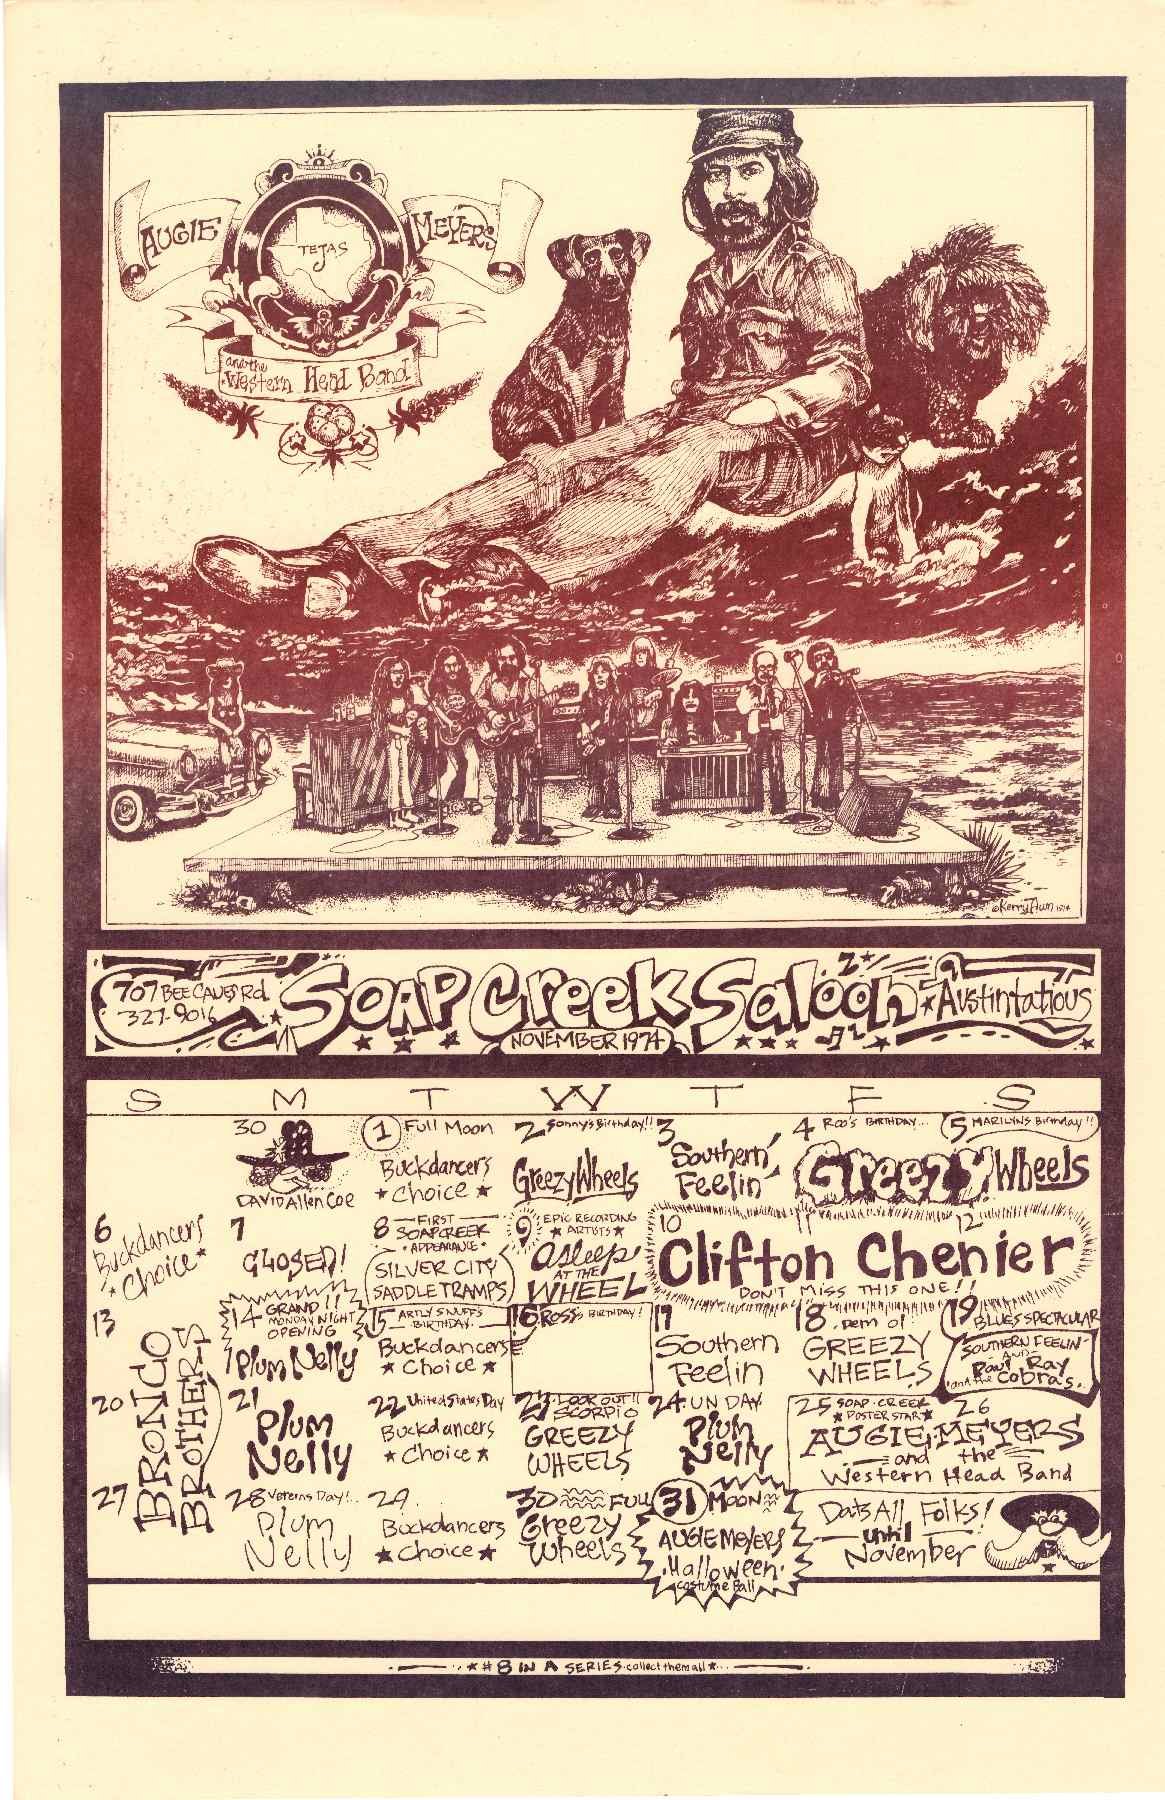 1974.11.November calendar.Soap Creek Saloon.Awn.JPG